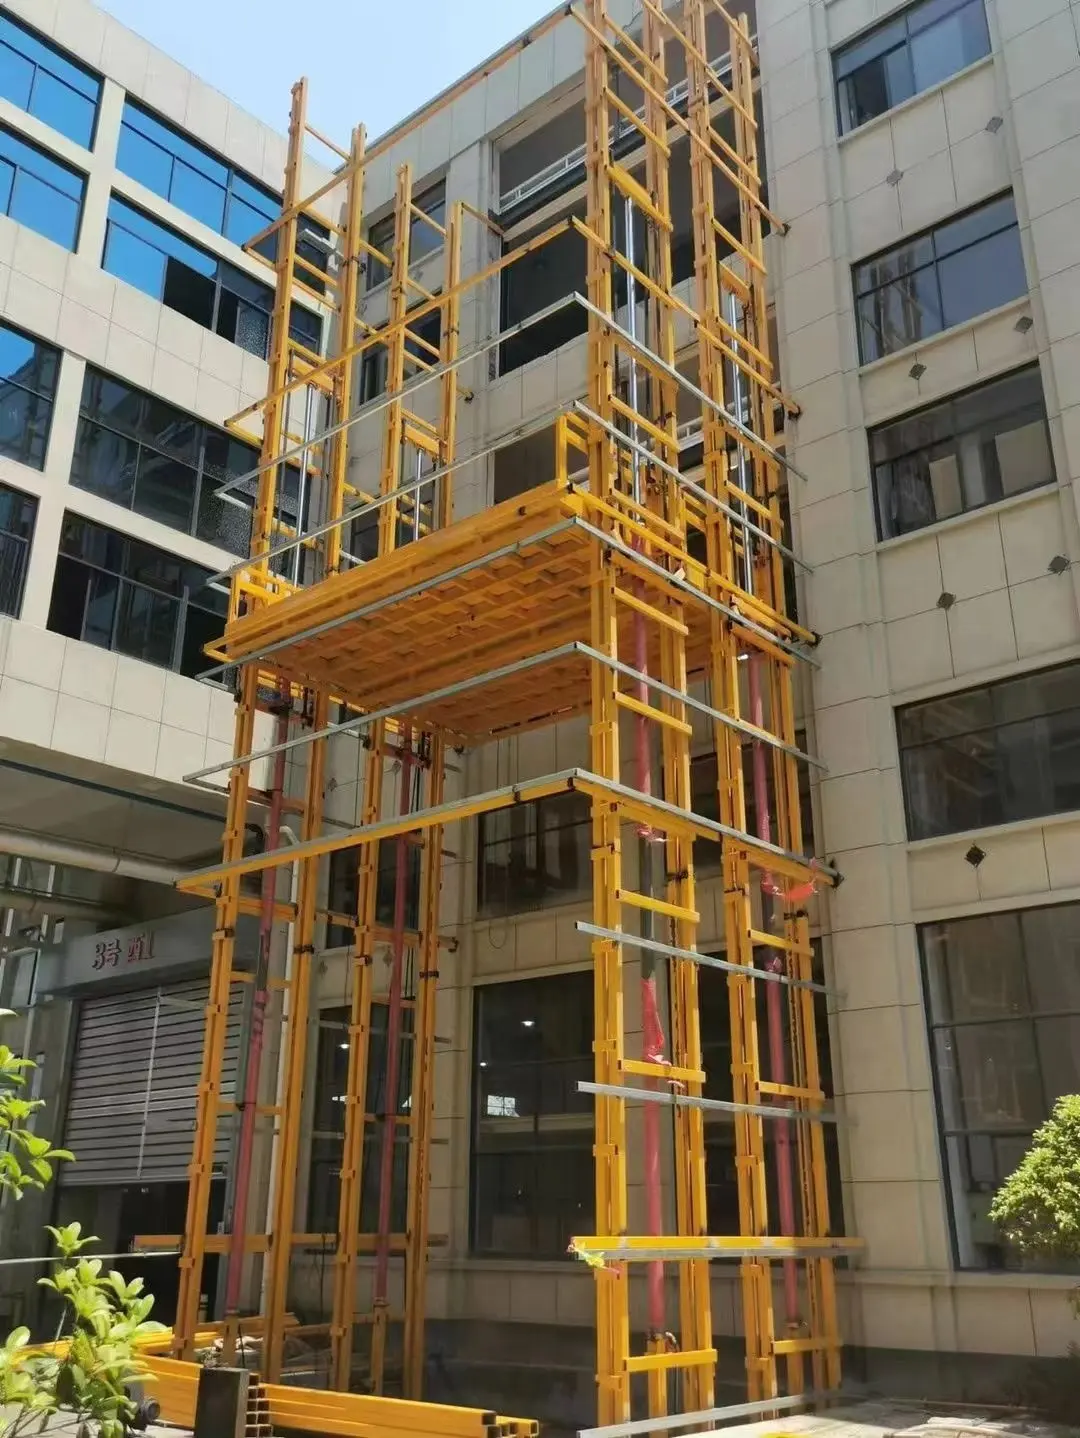 Plataforma elevadora eléctrica motorizada de mercancías manuales hidráulicas verticales de 3 pisos, 500kg, 10m, para carga en almacén